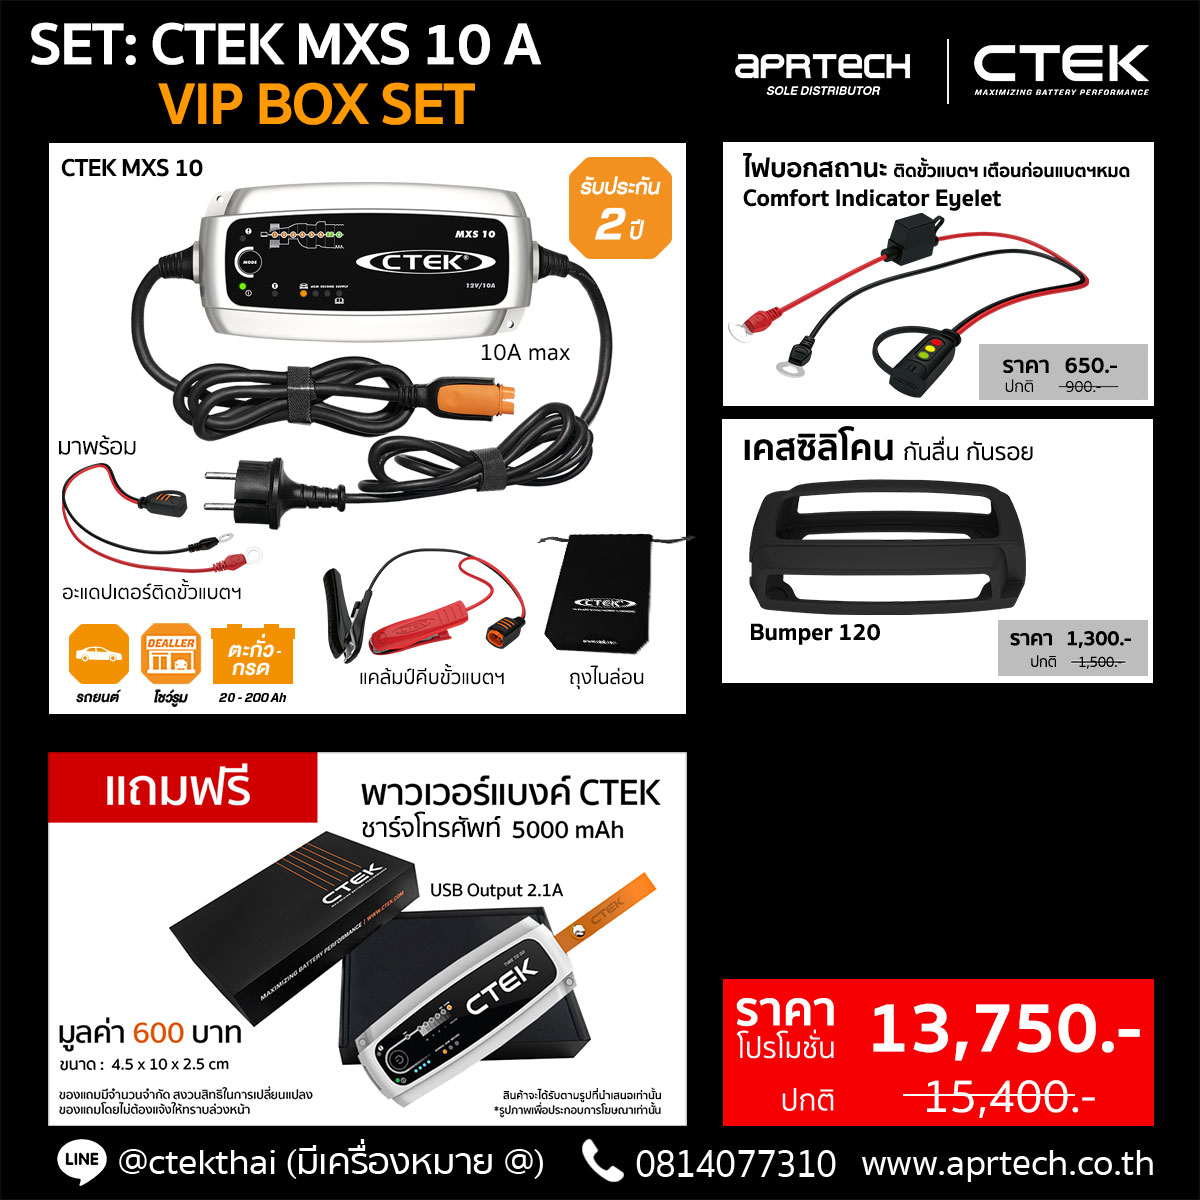 SET CTEK MXS 10 A (CTEK MXS 10 + Indicator Eyelet + Bumper)